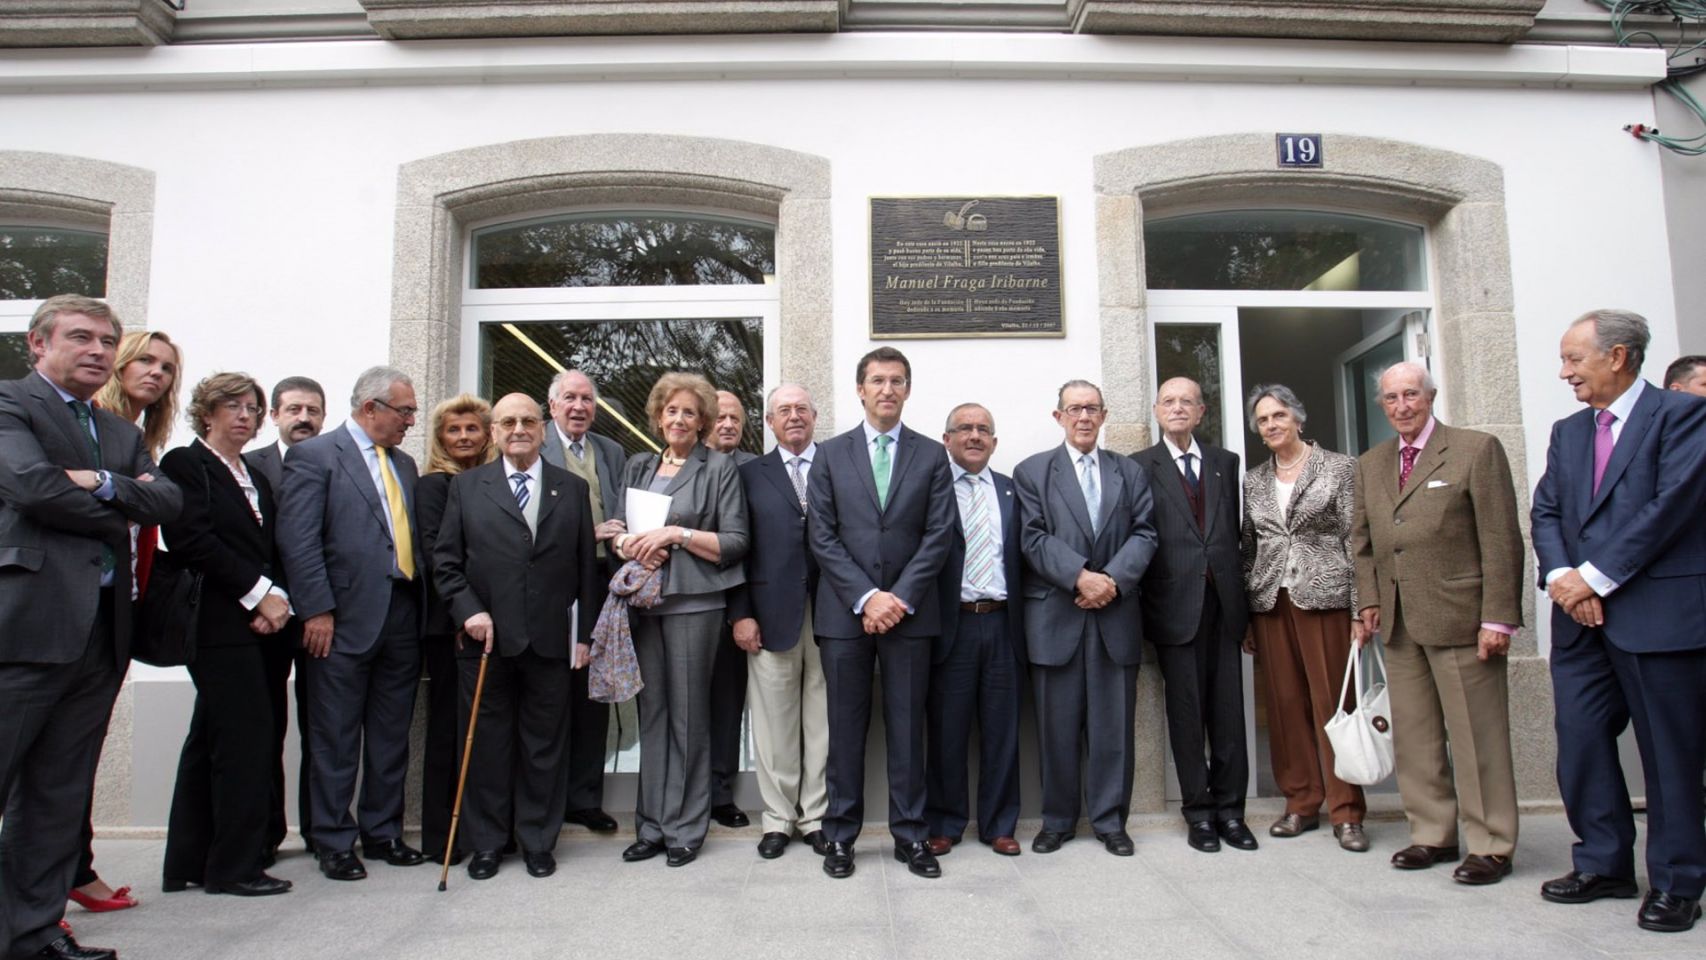 Feijóo, en una visita a la casa museo de Manuel Fraga realizada en 2011, acompañado de miembros del patronato de la Fundación.